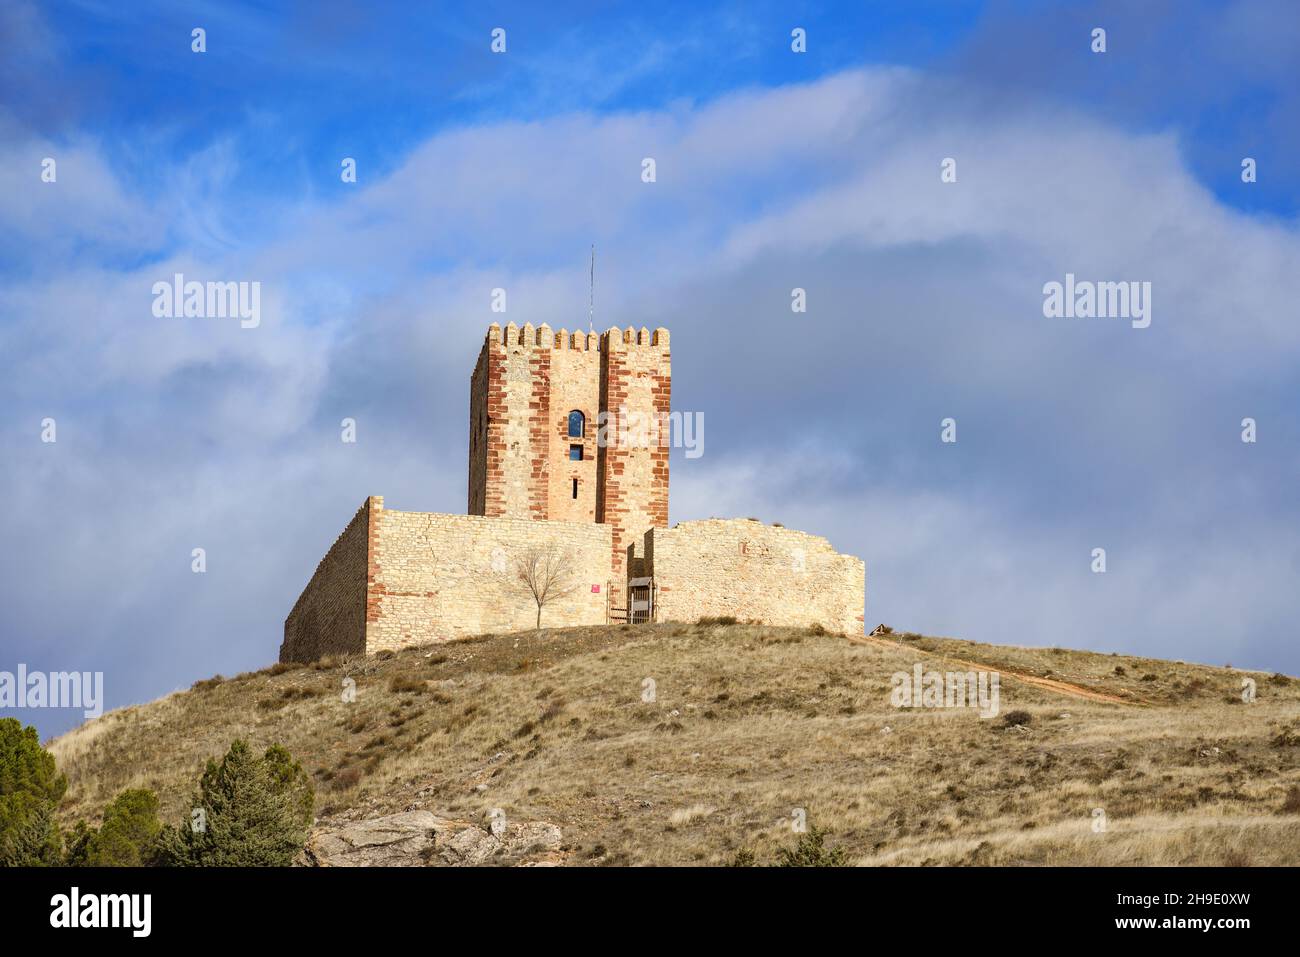 Fortaleza medieval contra el cielo azul. Torre de Aragón, Molina de Aragón, Guadalajara, España Foto de stock